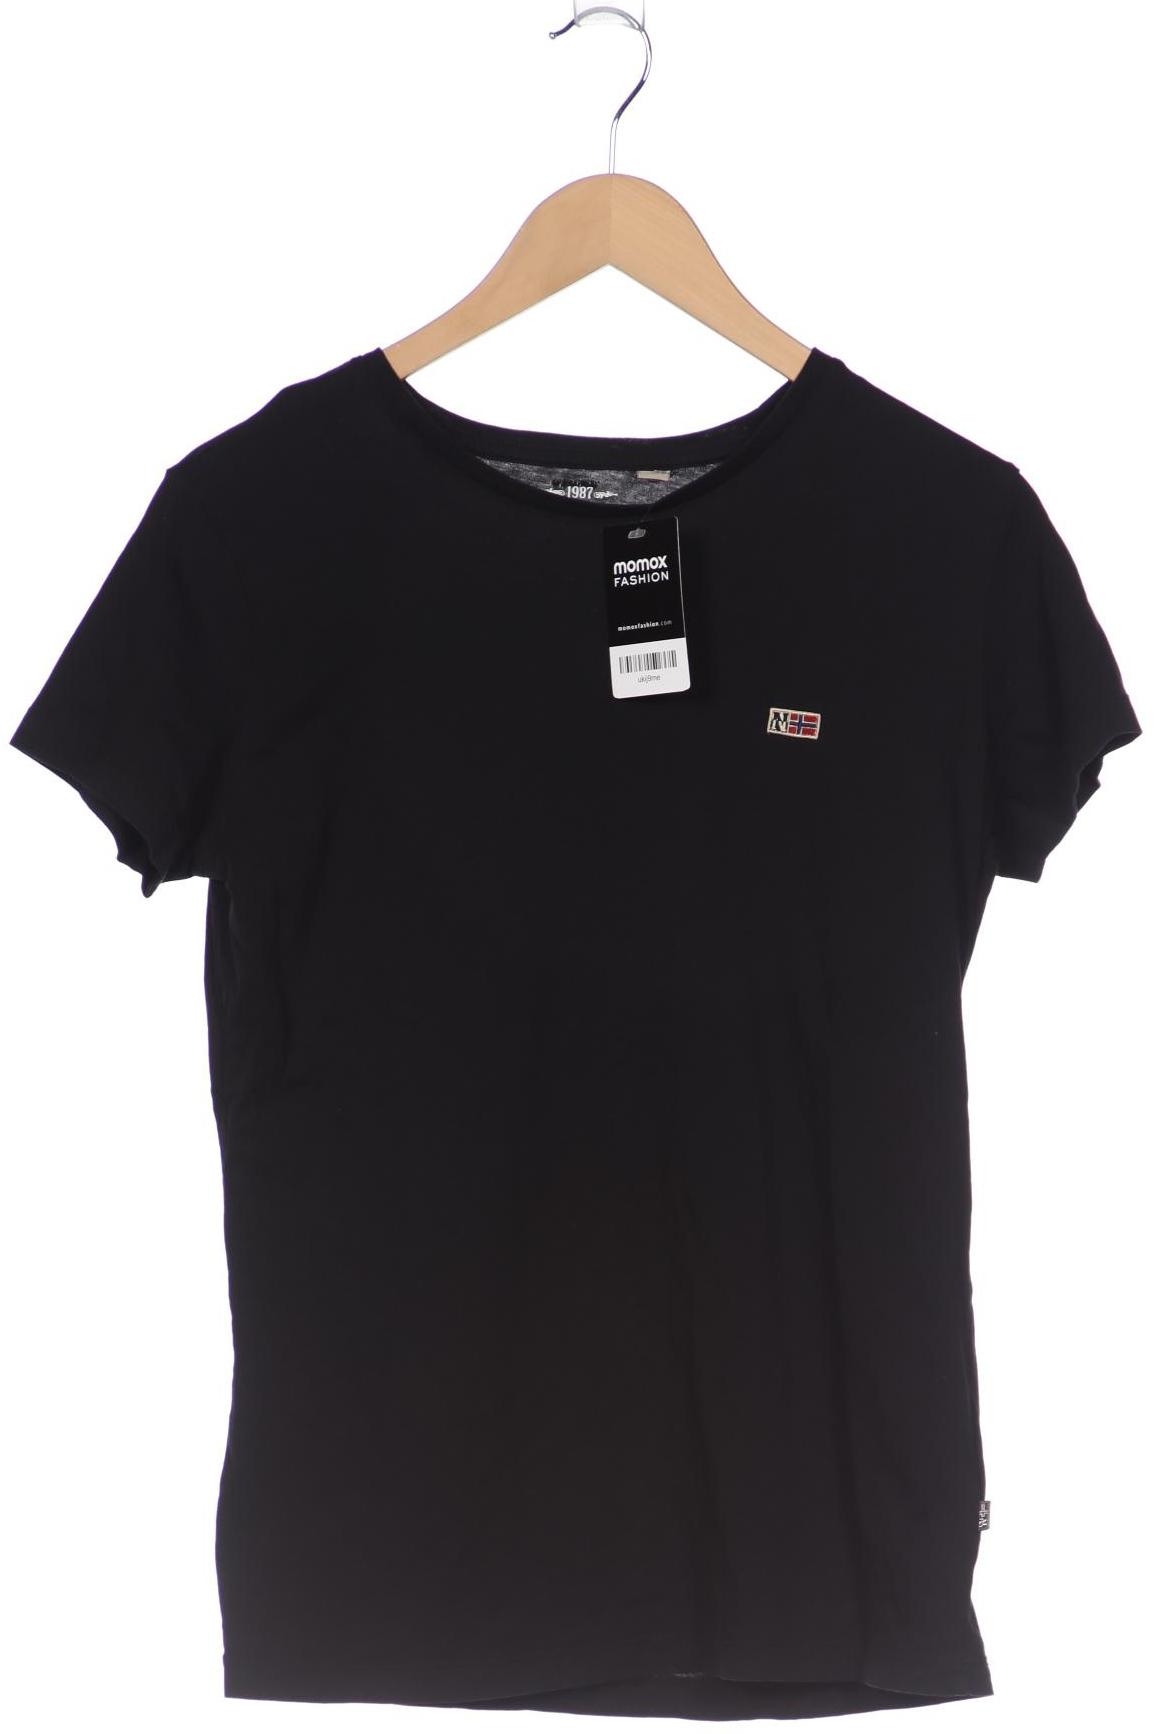 Napapijri Damen T-Shirt, schwarz von Napapijri